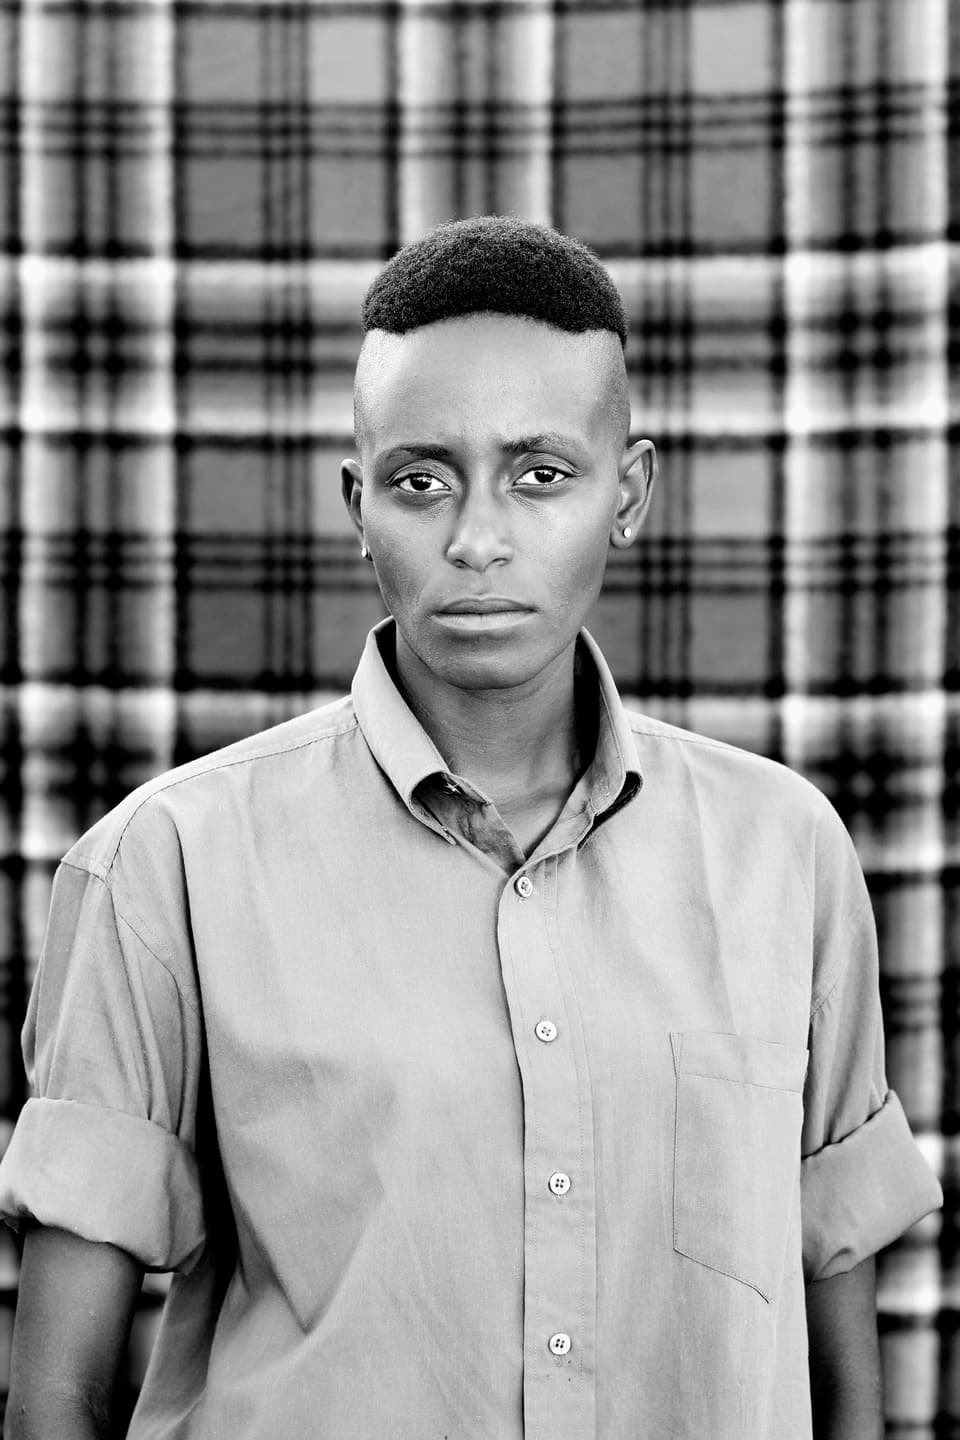 Ein Südafrikaner auf einem Schwarz-weiss-Bild.